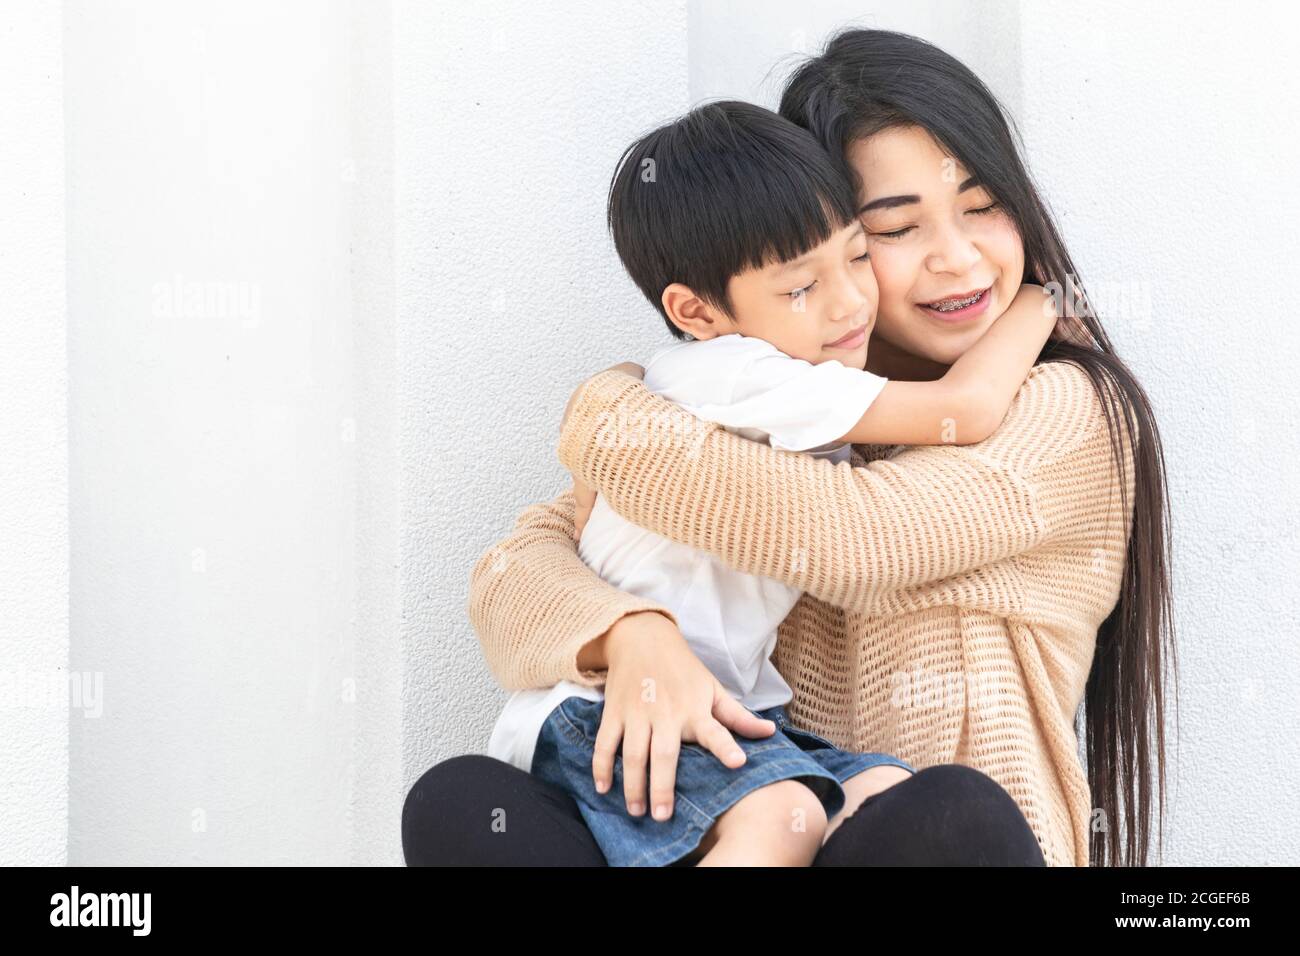 Portrait schöne Mutter und Kind glücklich umarmt. Asiatische Familie Mutter und Kind umarmen und schließen ihre Augen, niedlich und warm. Stockfoto